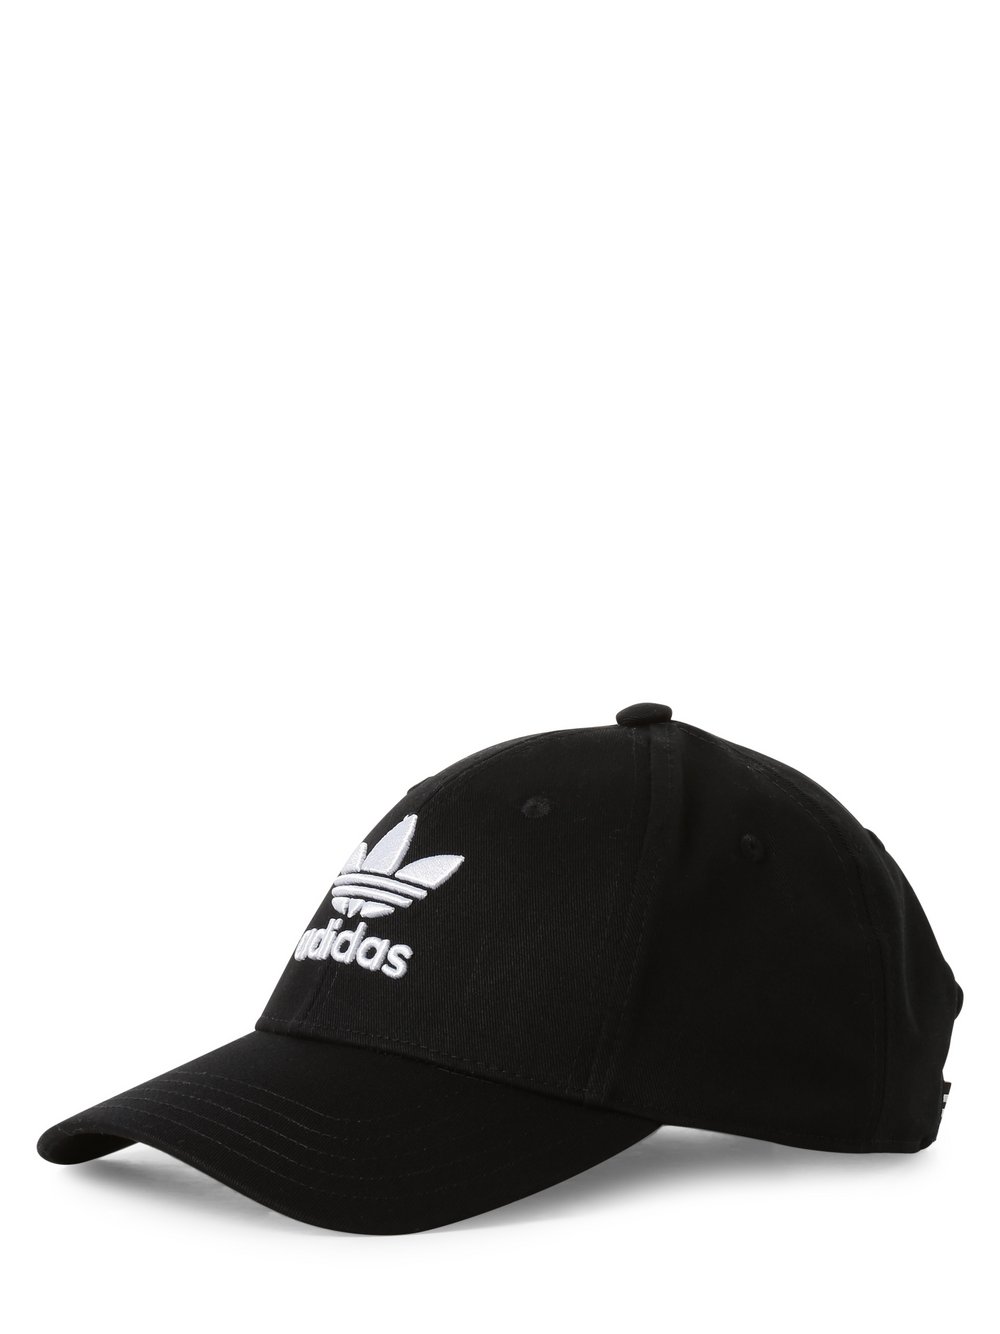 Adidas Originals - Damska czapka z daszkiem, czarny